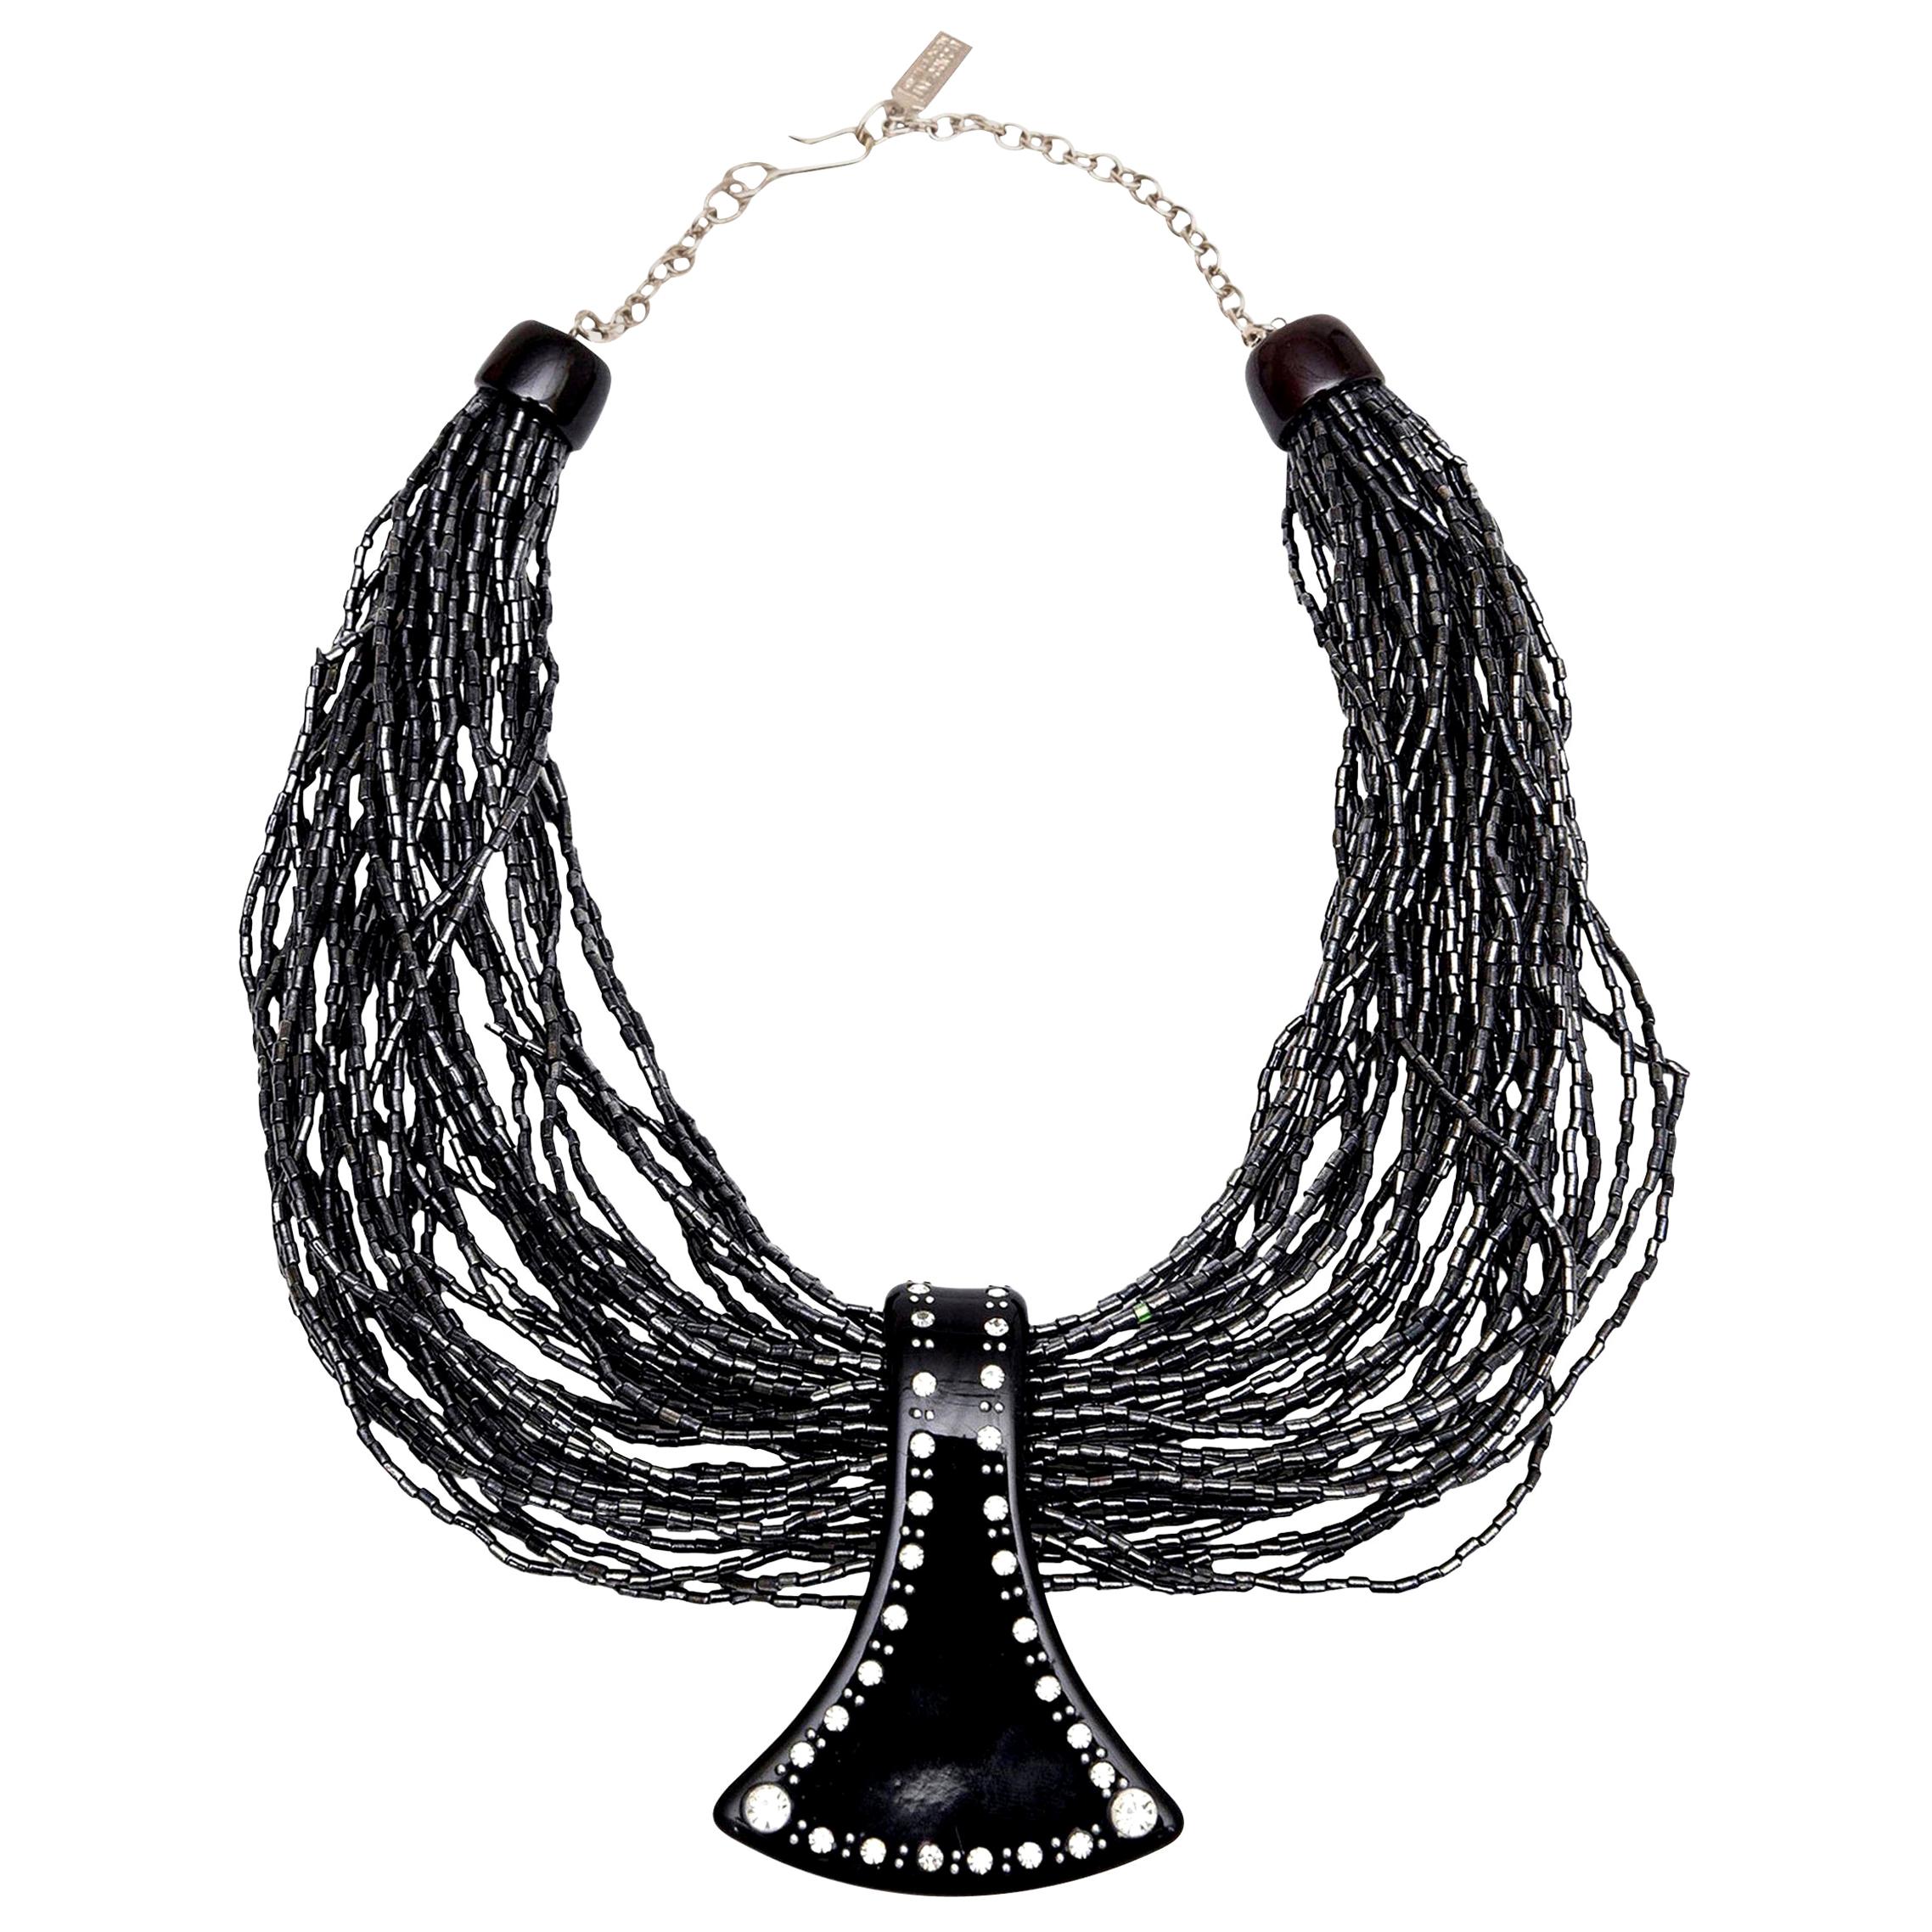  Ugo Correani Glass Beads, Lucite Rhinestone Strand Pendant Necklace Italian